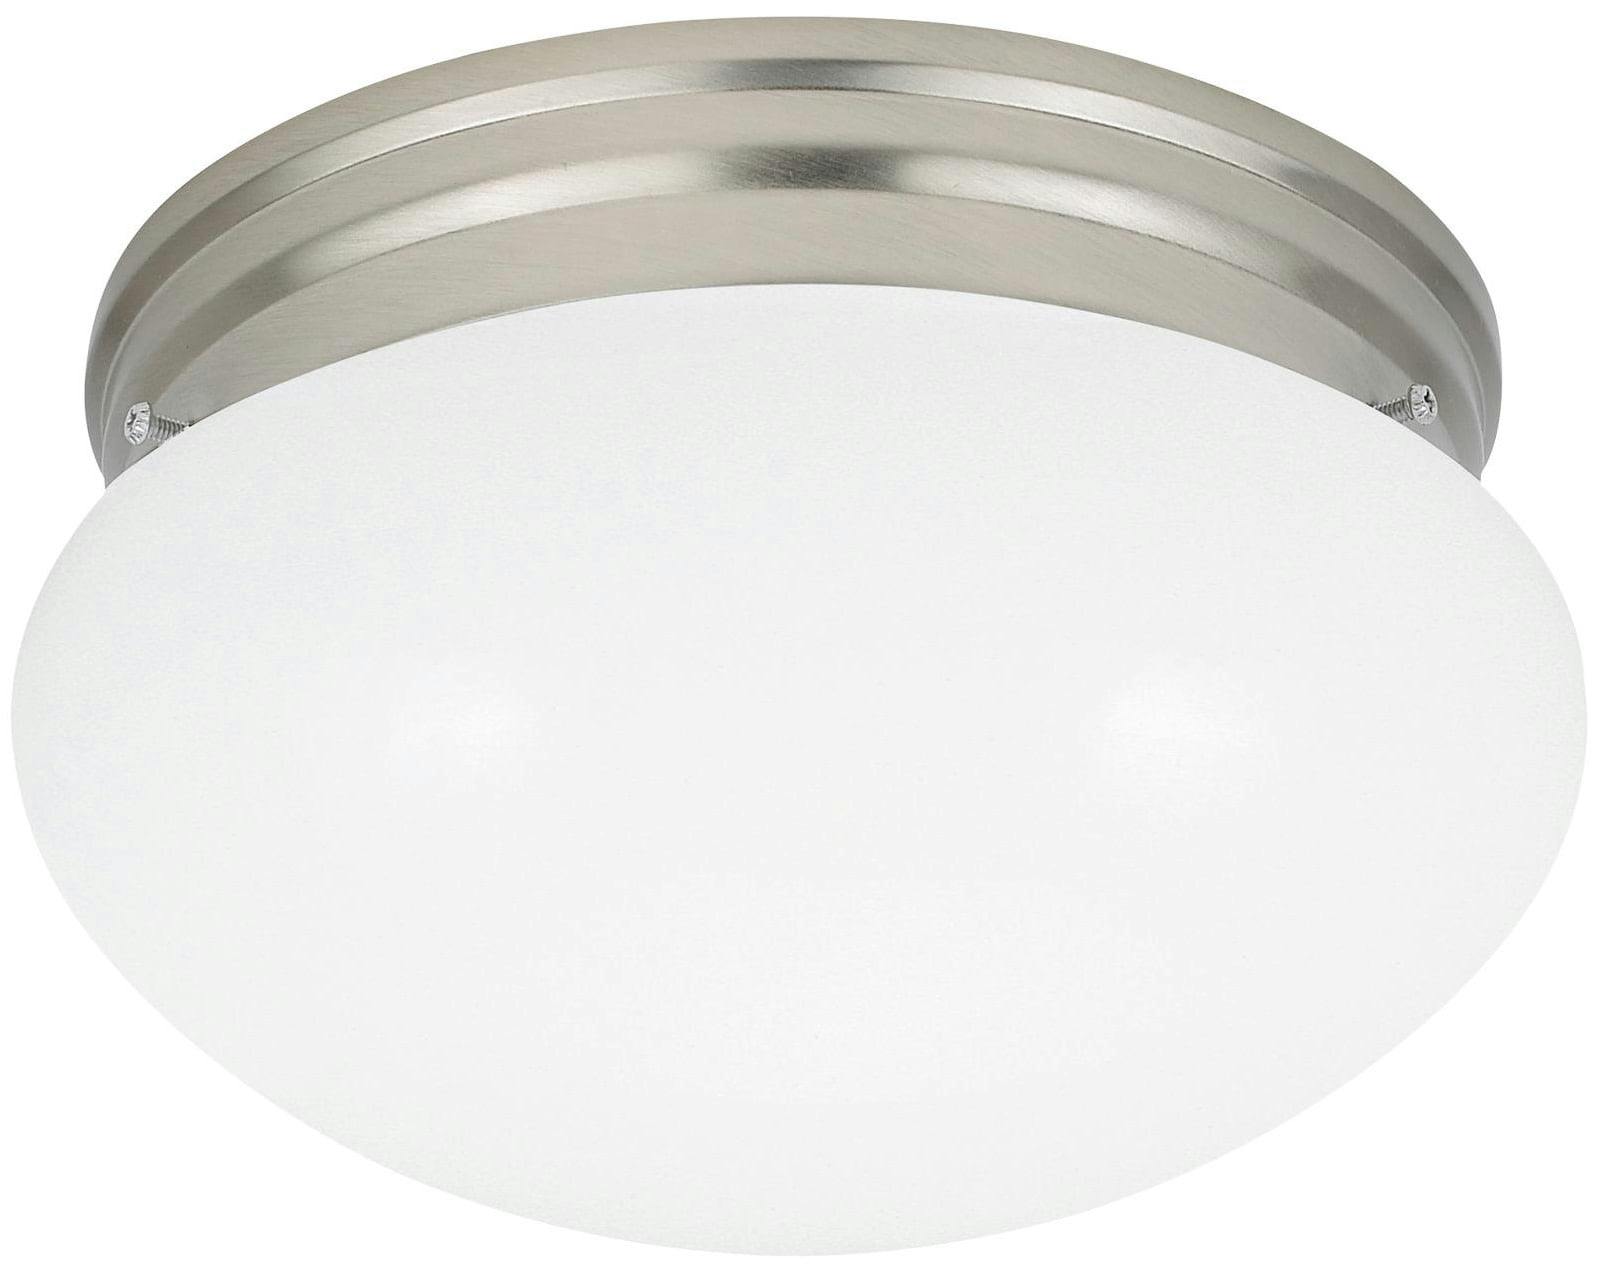 Webster Dual LED Flush Mount Ceiling Light in Brushed Nickel